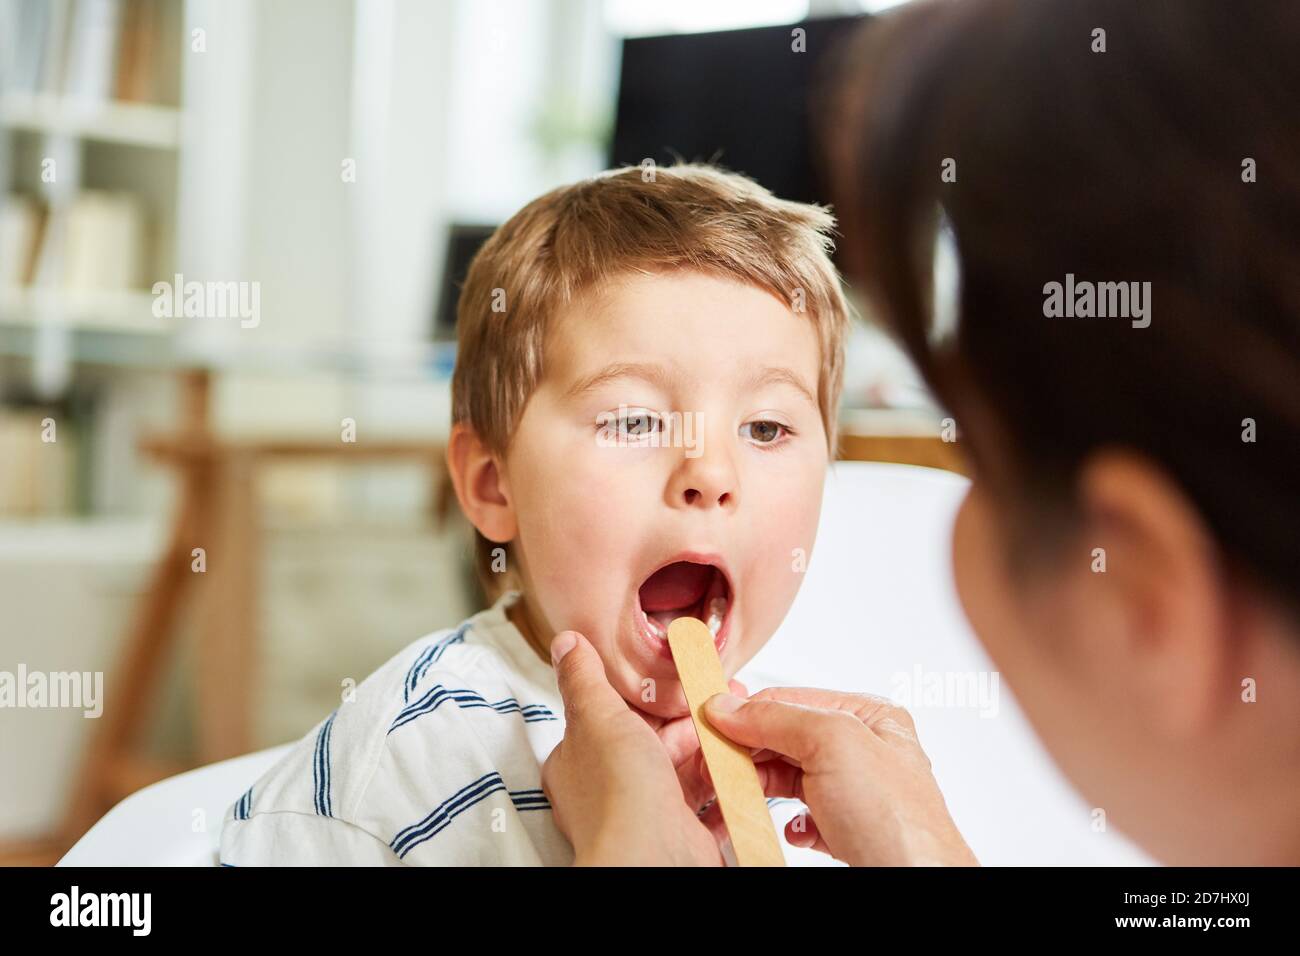 Le pédiatre avec spatule examine l'enfant avec l'amygdalite et le mal de gorge Banque D'Images